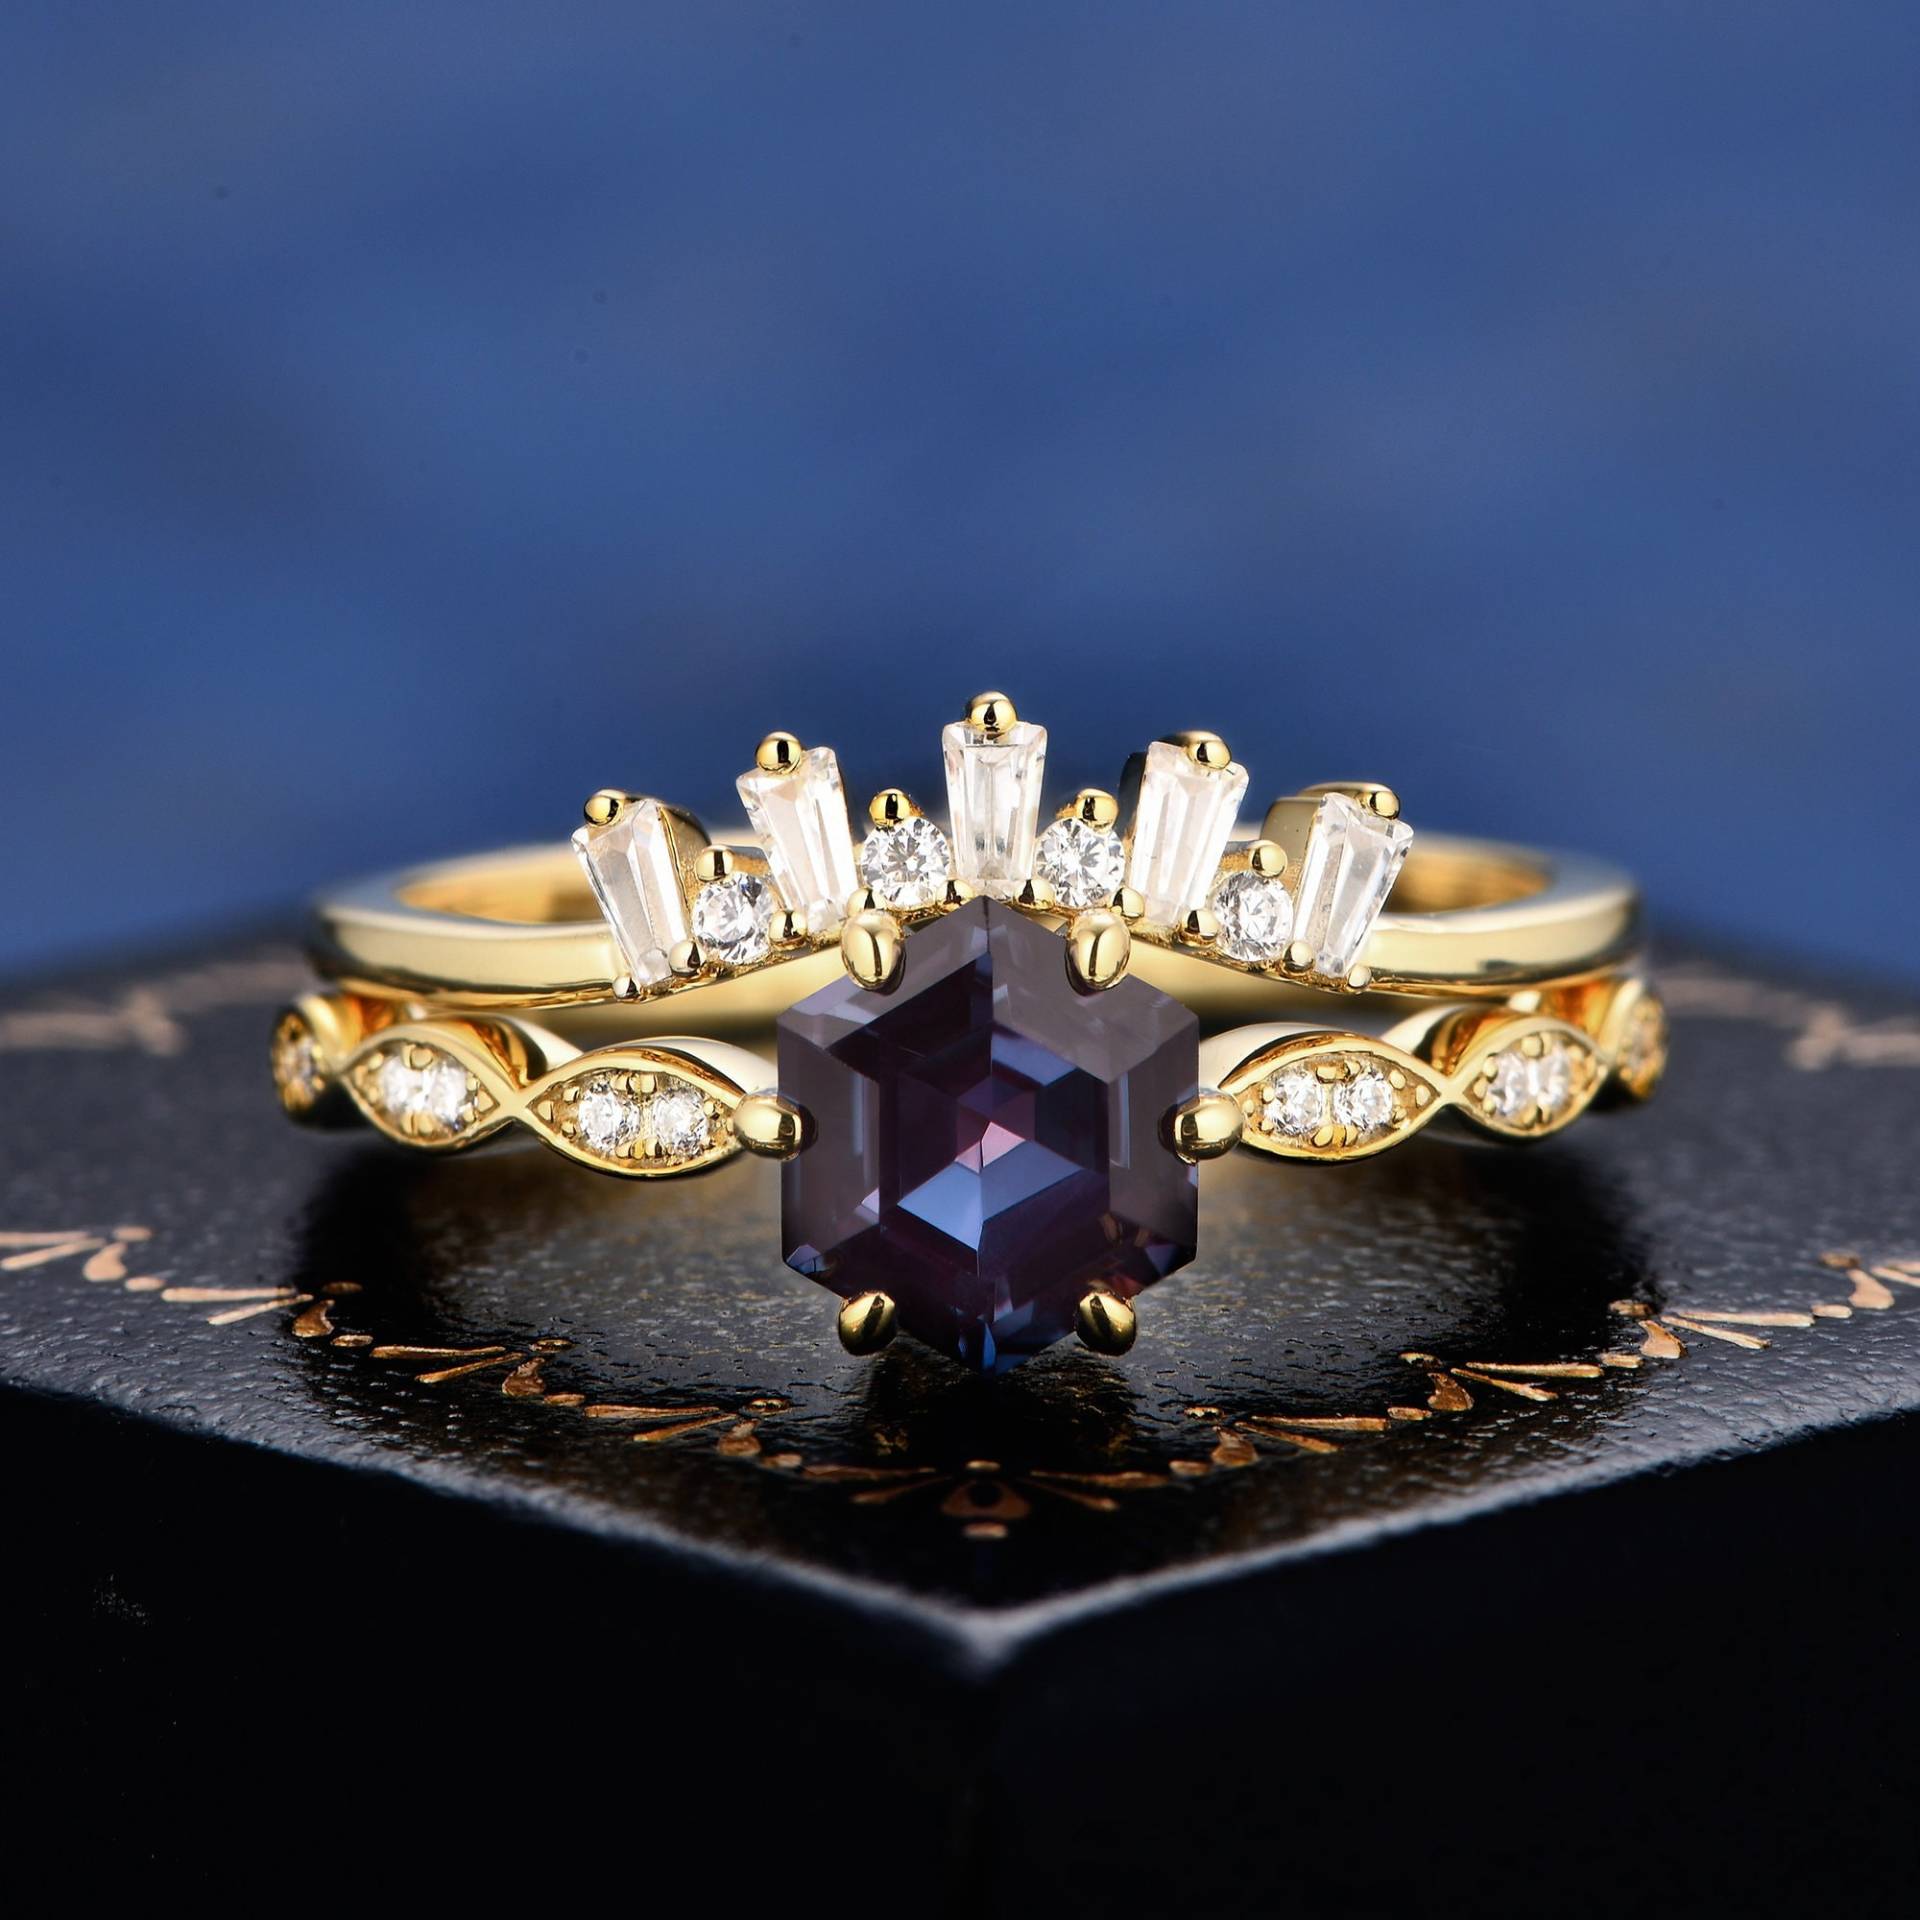 Hexagon Cut Alexandrit K Solid Gold Ring Für Frauen Hochzeit Verlobungsband Edelstein Handarbeit Versprechen Braut Set Geschenke Sie von StuartTreesr